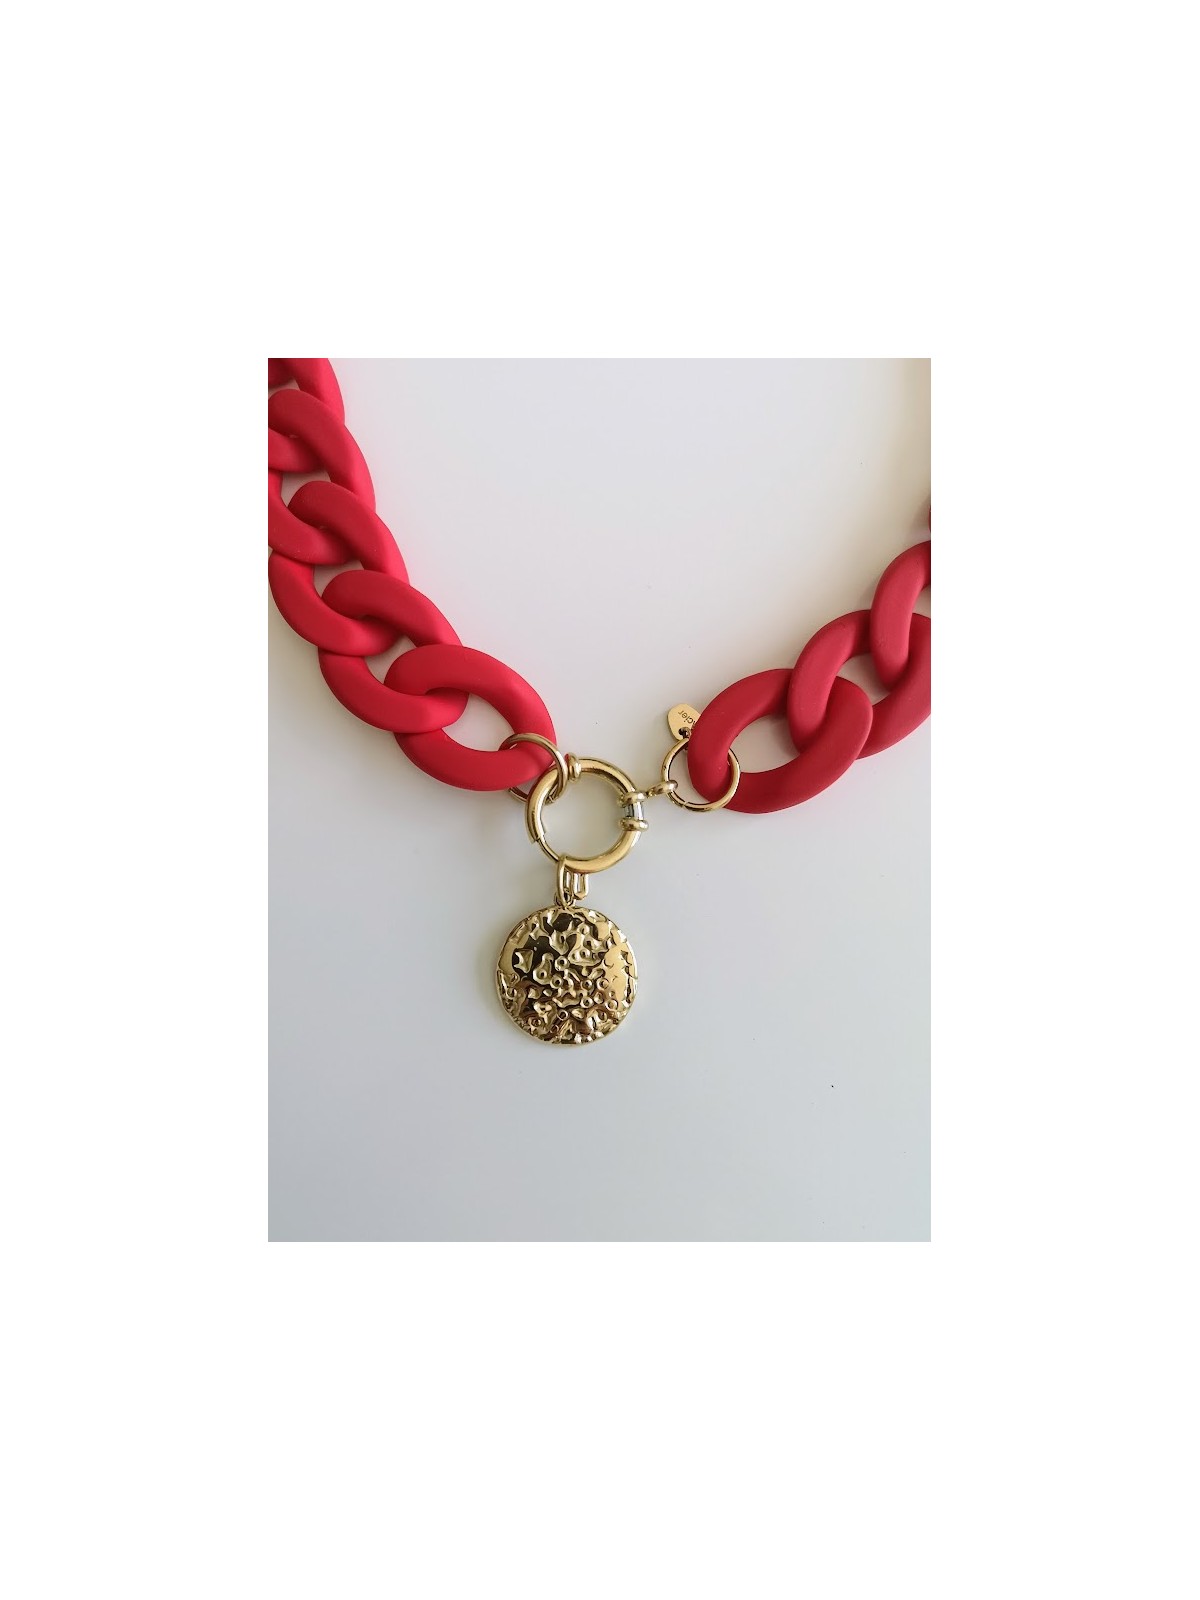 Collier rouge avec pendentif doré ras de cou l 2 vue medaillon l Tilleulmenthe mode boutique de vêtements femme en ligne